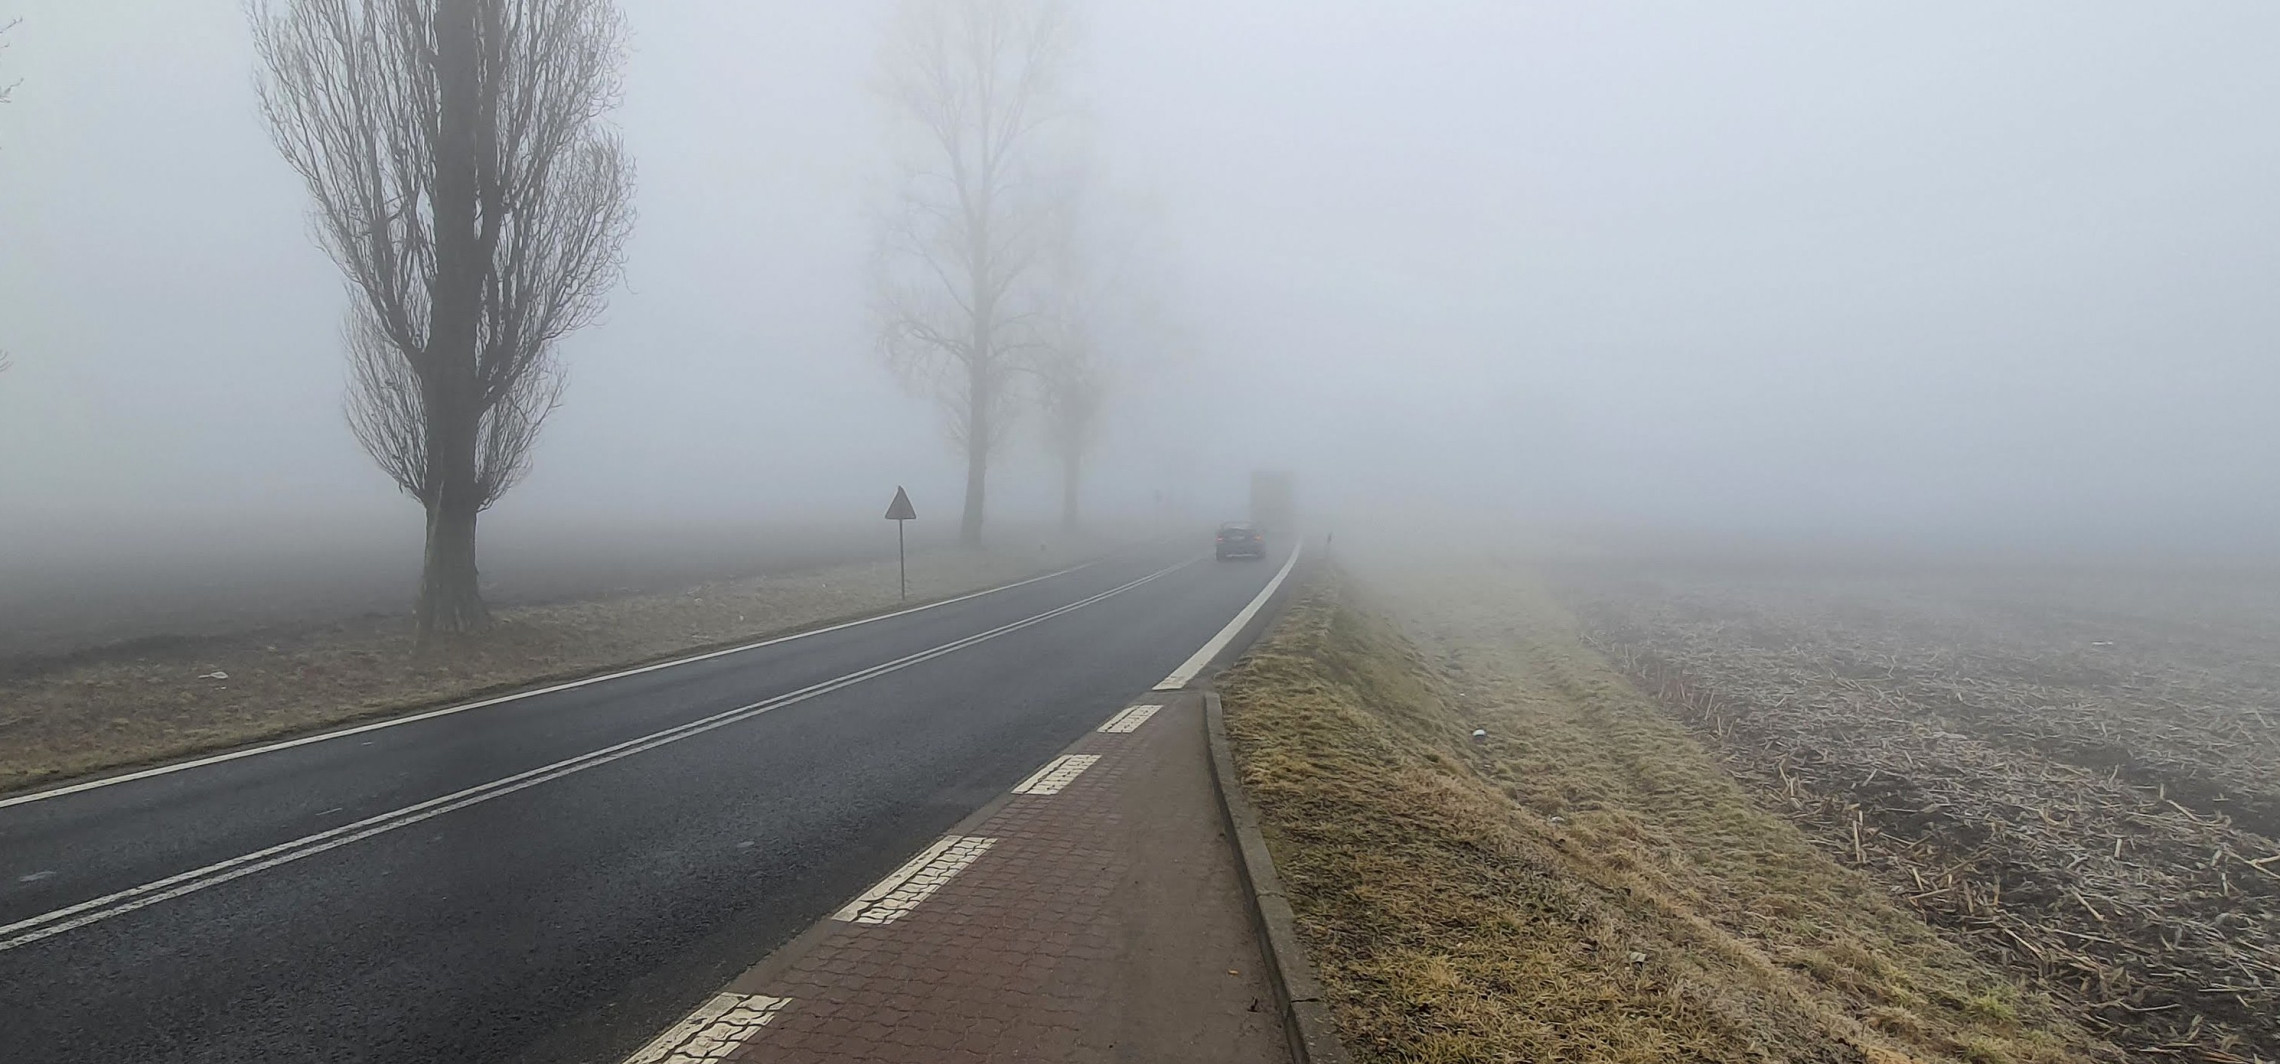 Inowrocław - Jest gęsta mgła. Włącz światła!